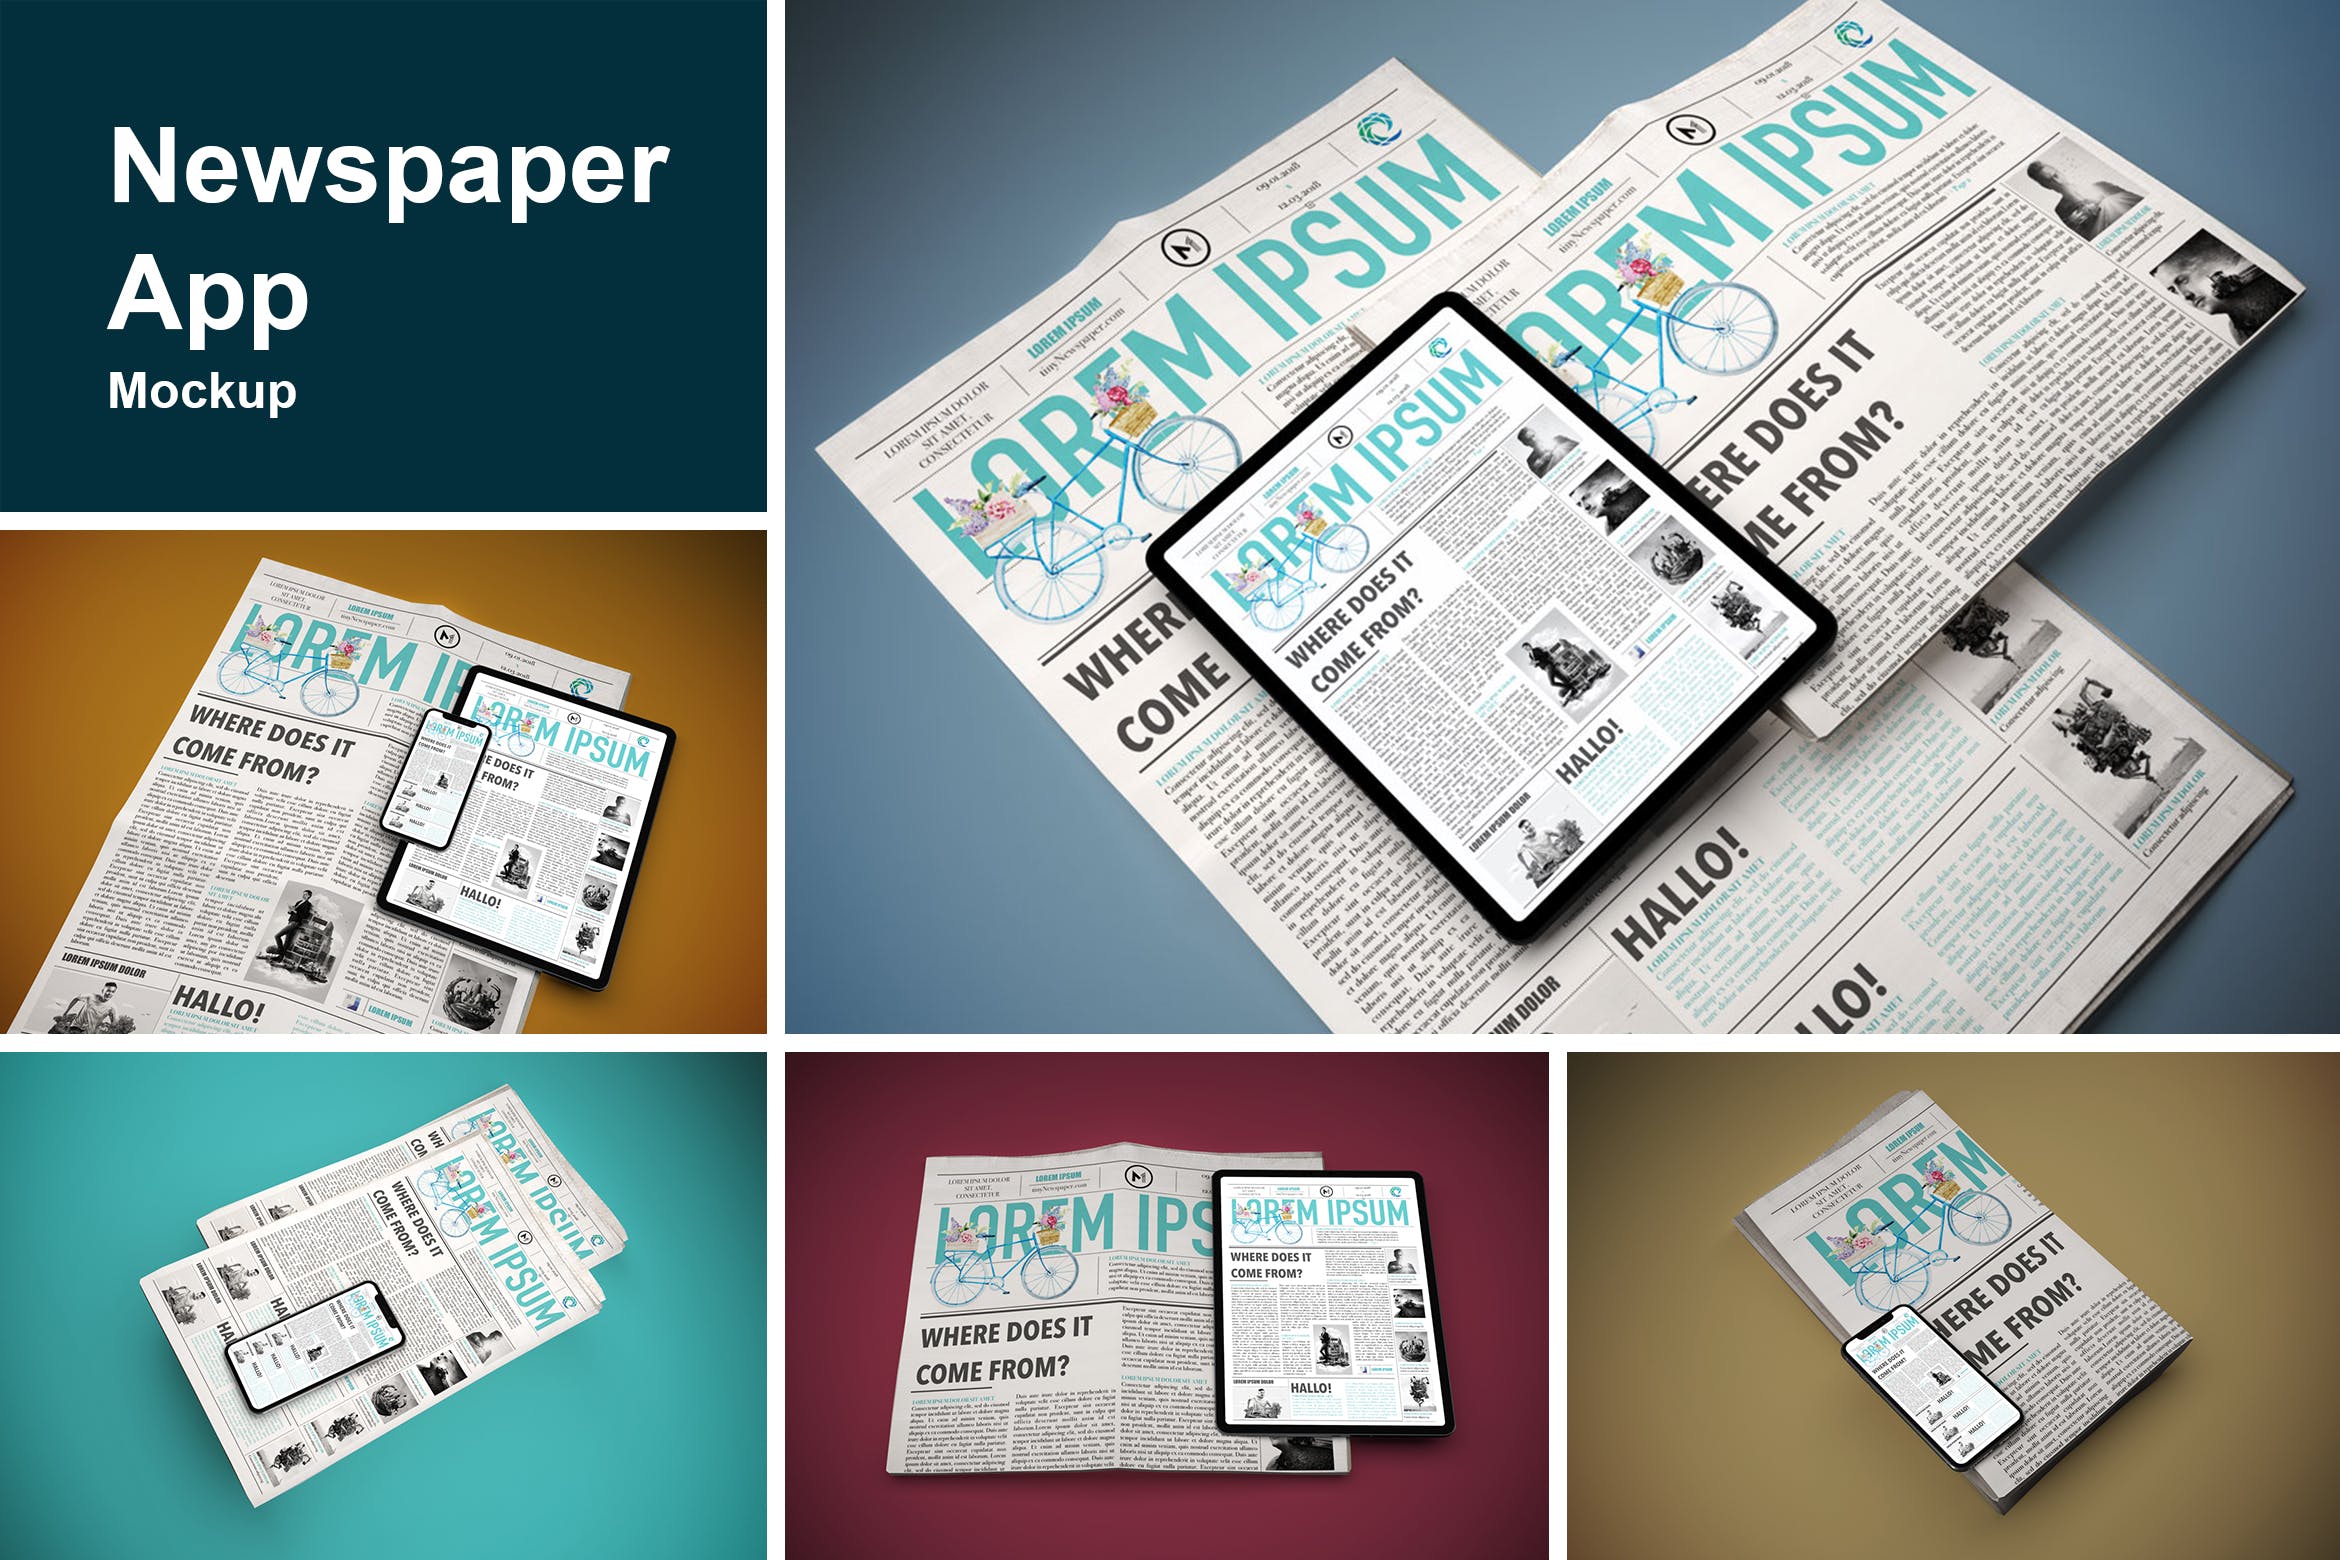 电子版报纸版式设计效果图样机 Newspaper App MockUp插图